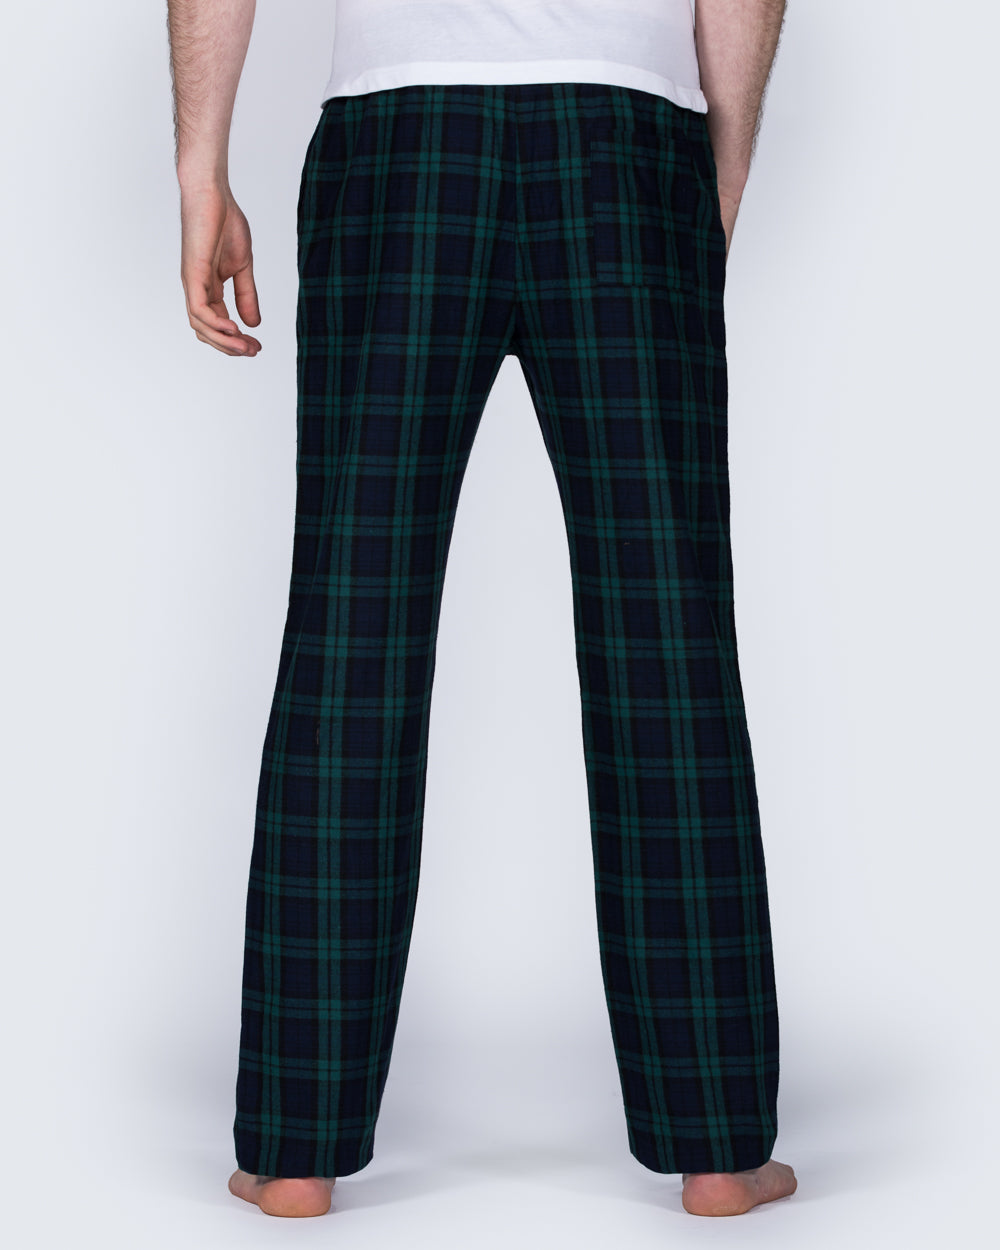 2t Tall Regular Fit Pyjama Bottoms (green pattern)